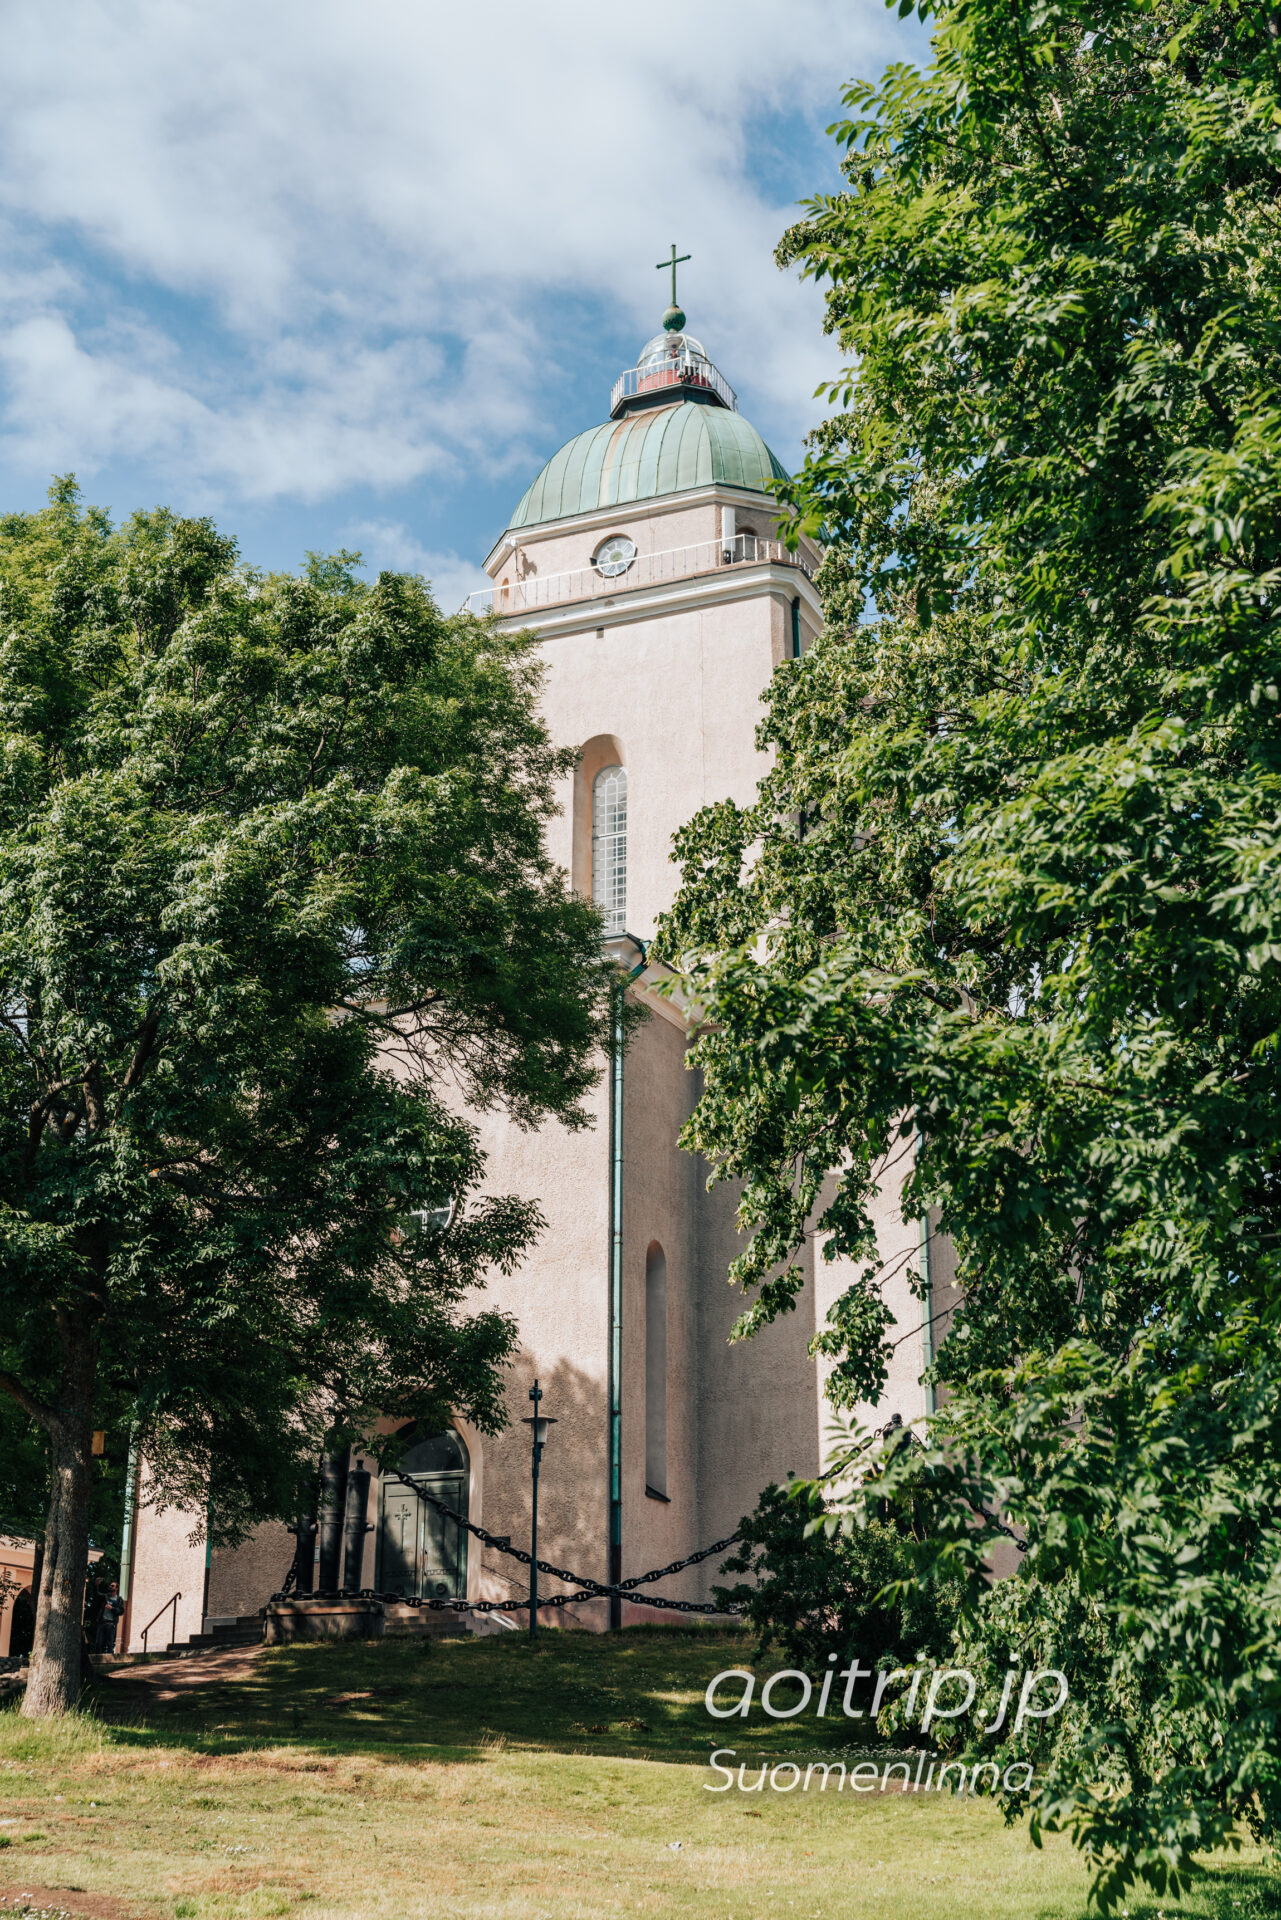 スオメンリンナ教会 Suomenlinna Church